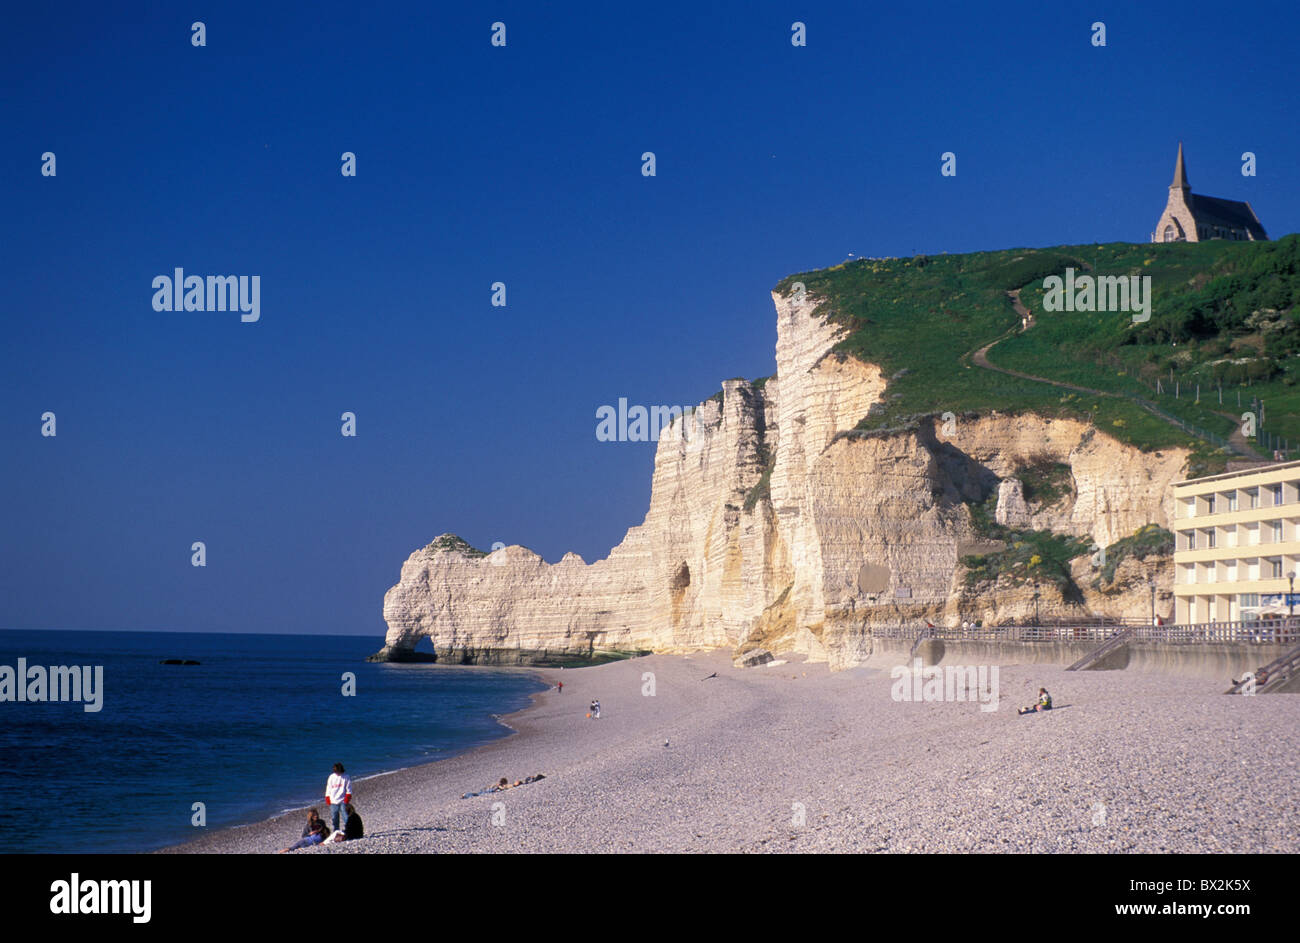 Menschen Kiesel Strand Meeresklippen Etretat Normandie Frankreich Europa Stockfoto